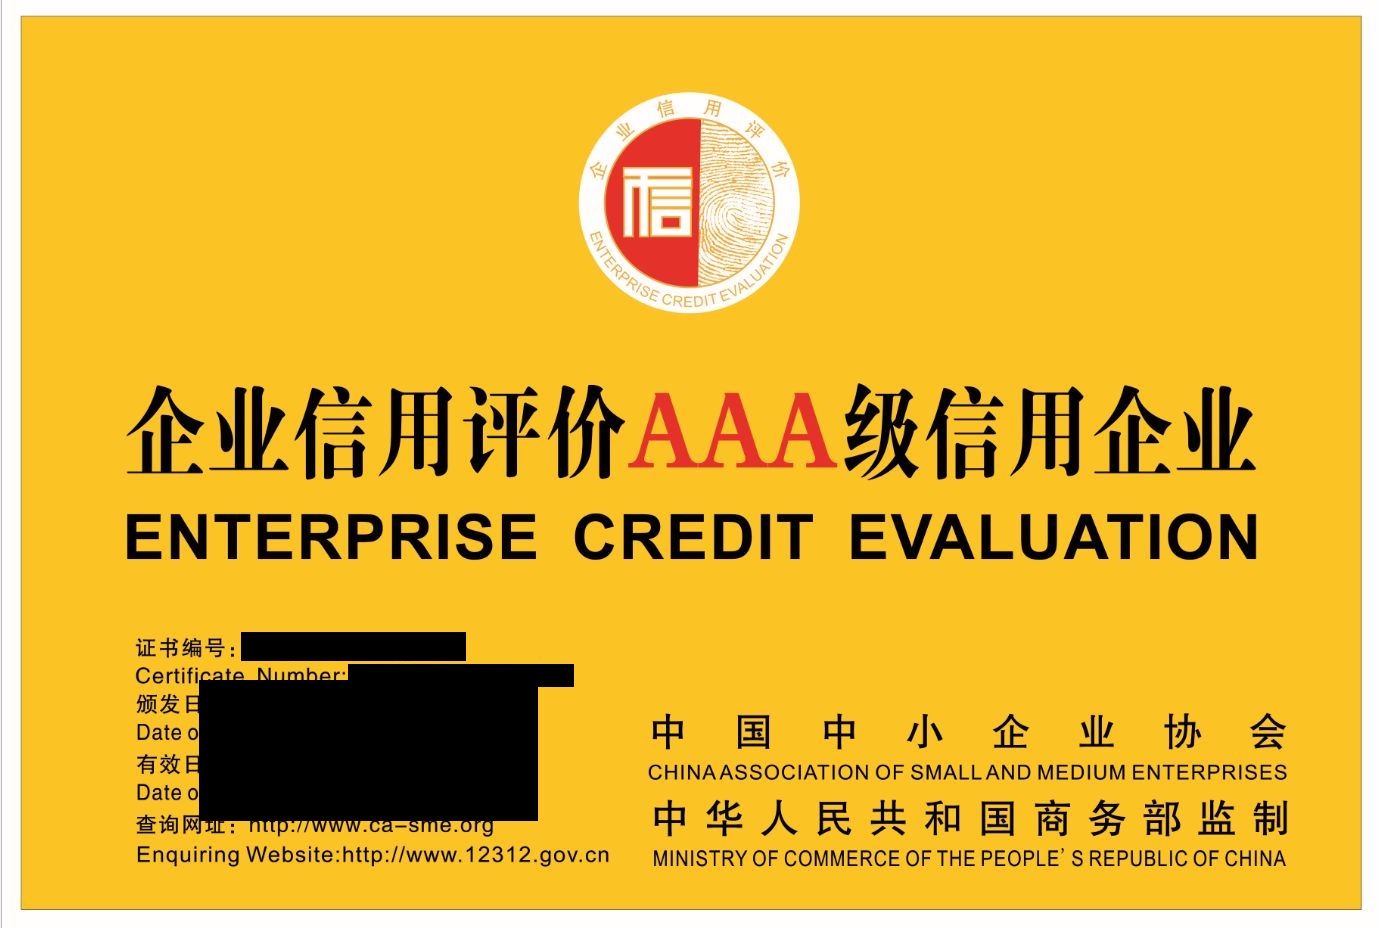 山東省淄博市申報AAA認證信用等級評估的流程